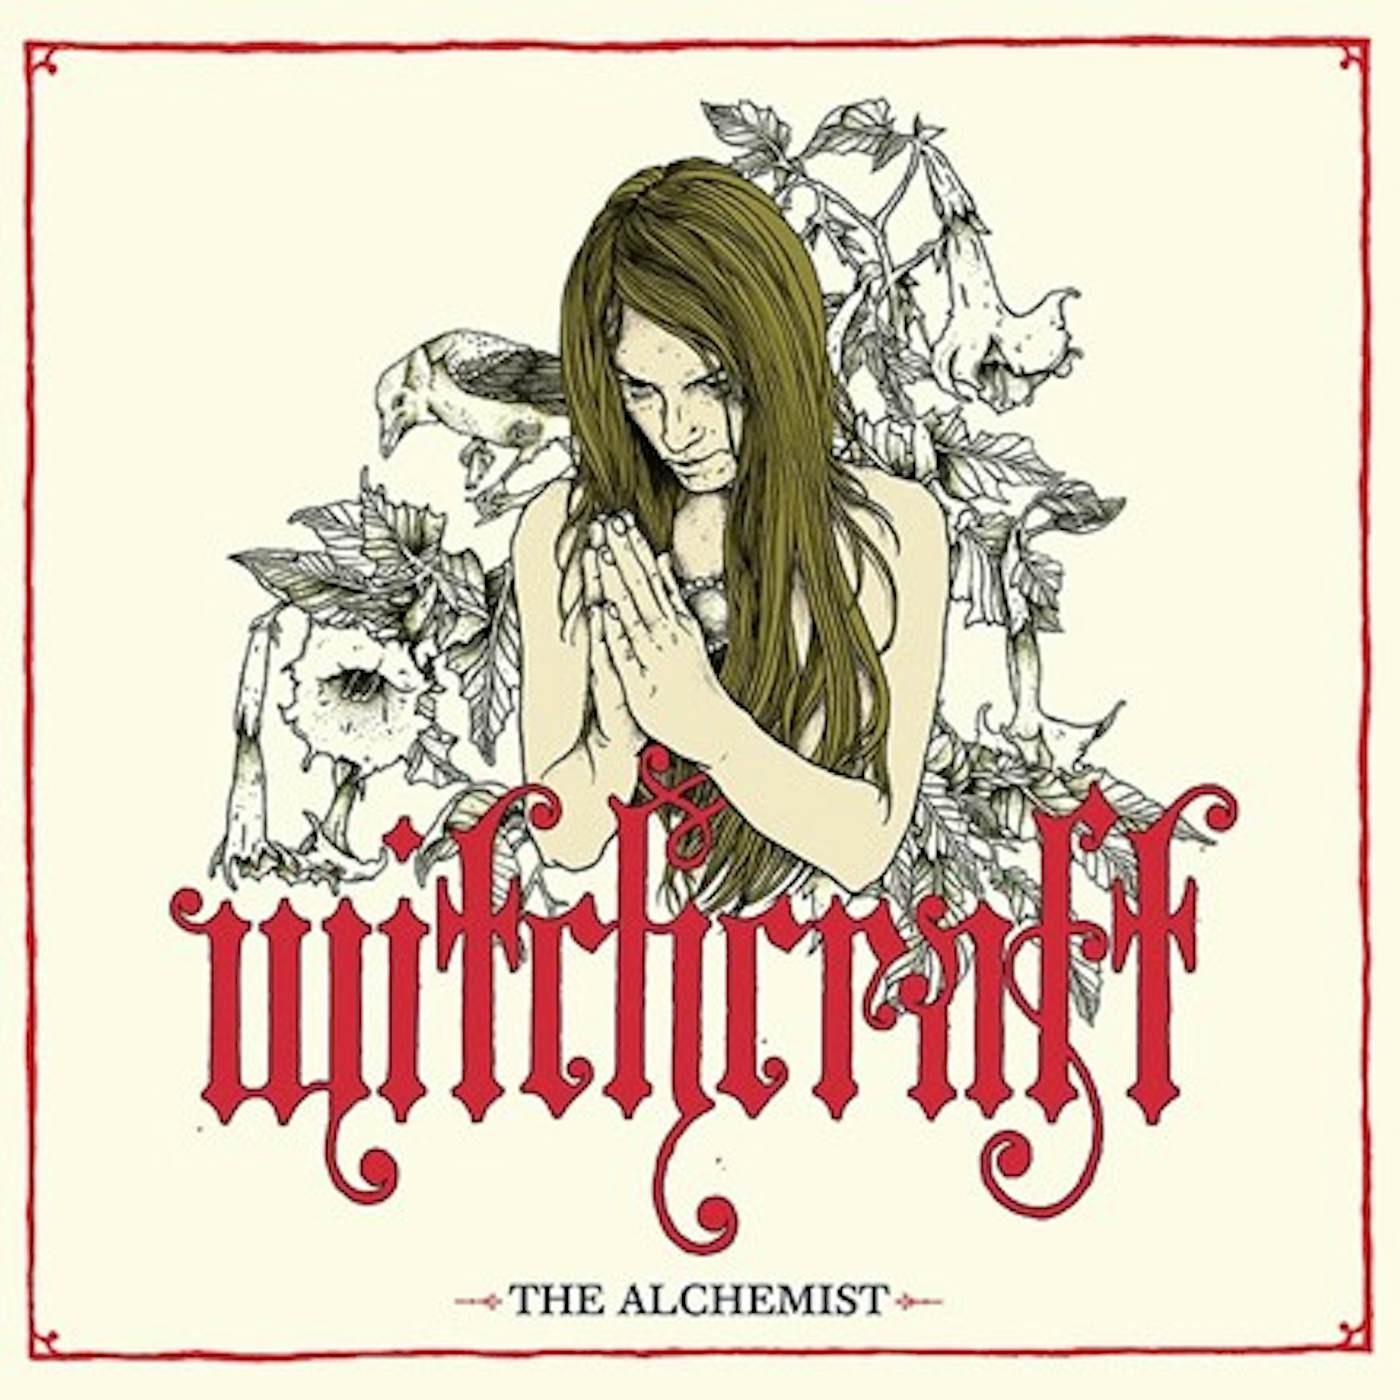 Witchcraft ALCHEMIST CD